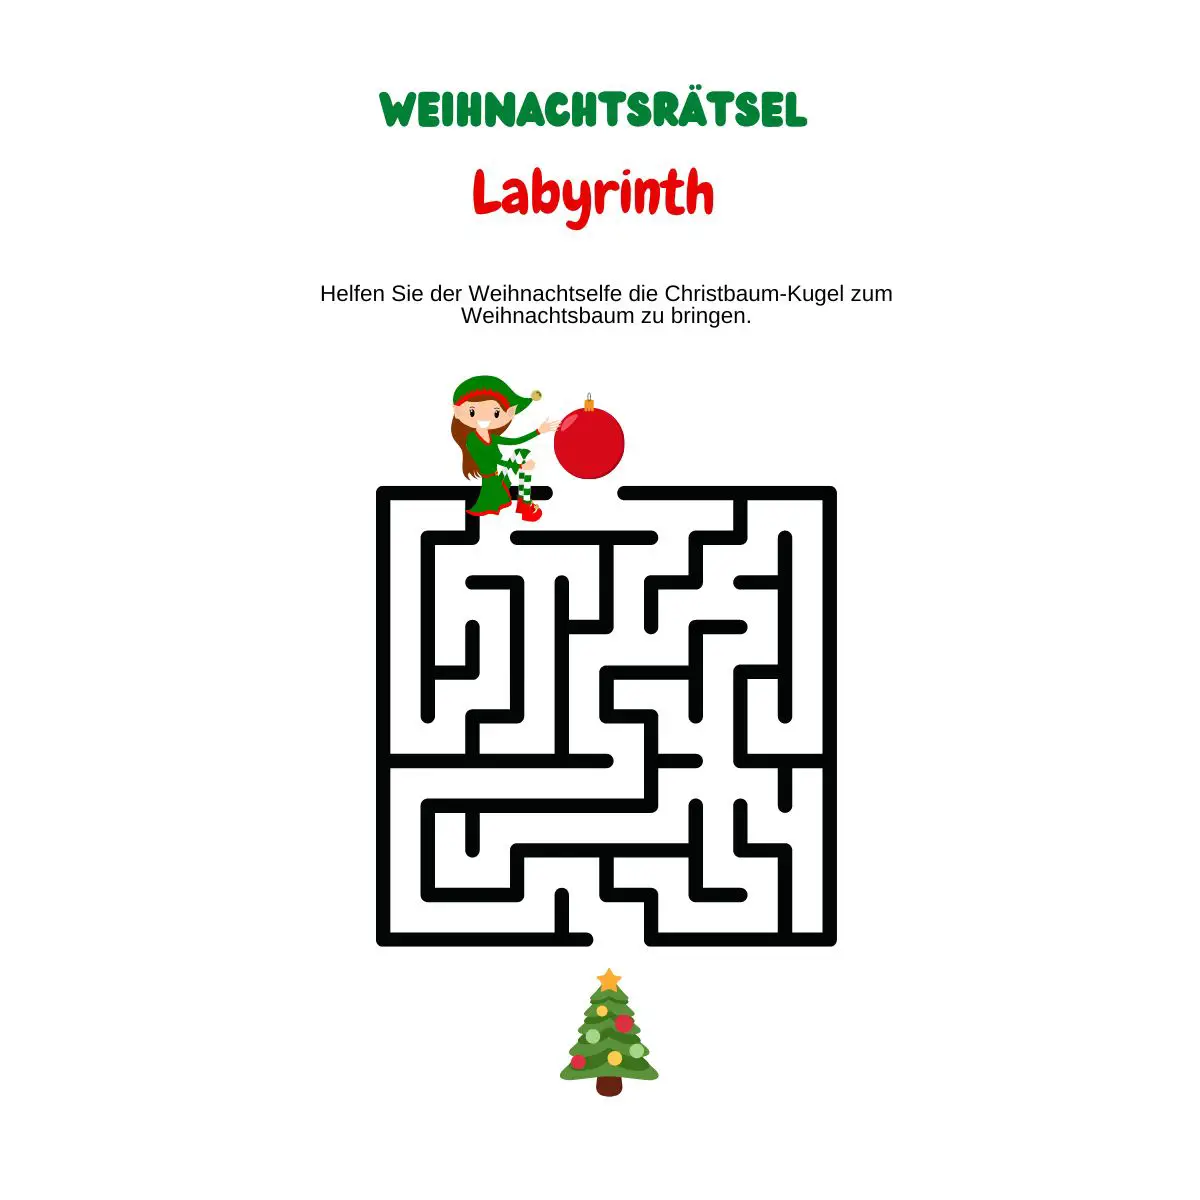 Labyrinth mit Weihnachtselfe und Weihnachtsbaum.